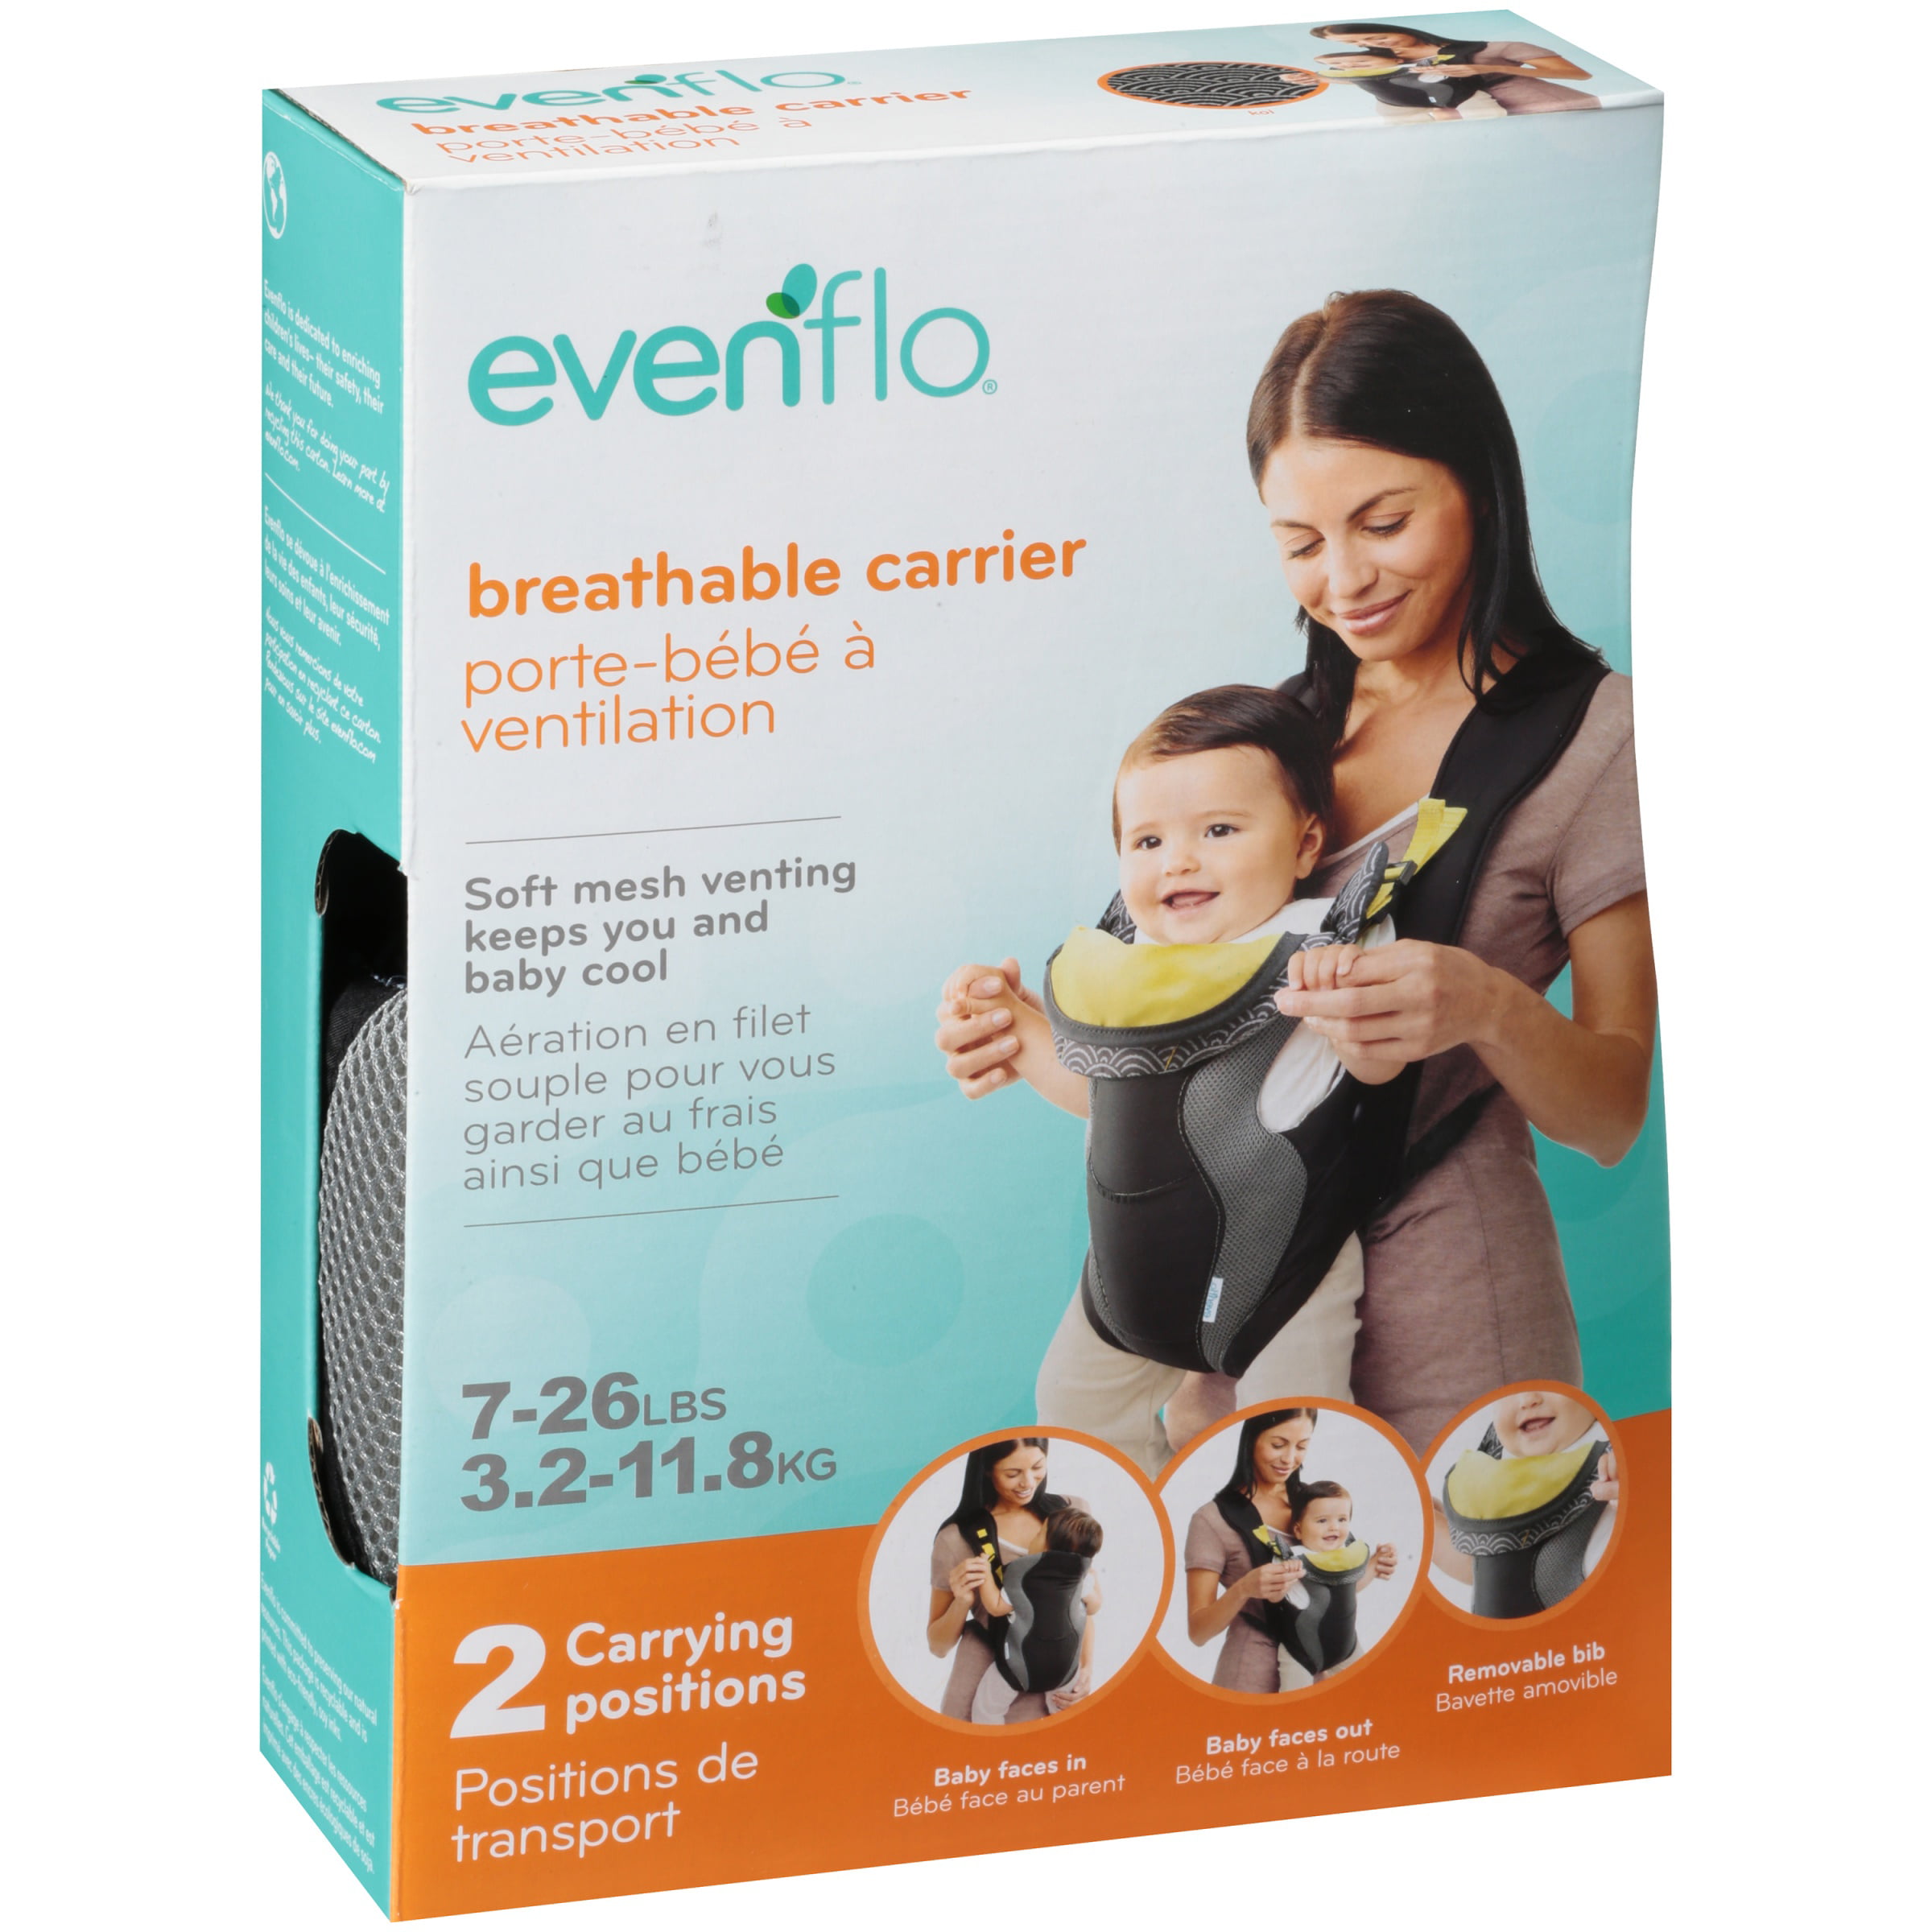 evenflo breathable carrier